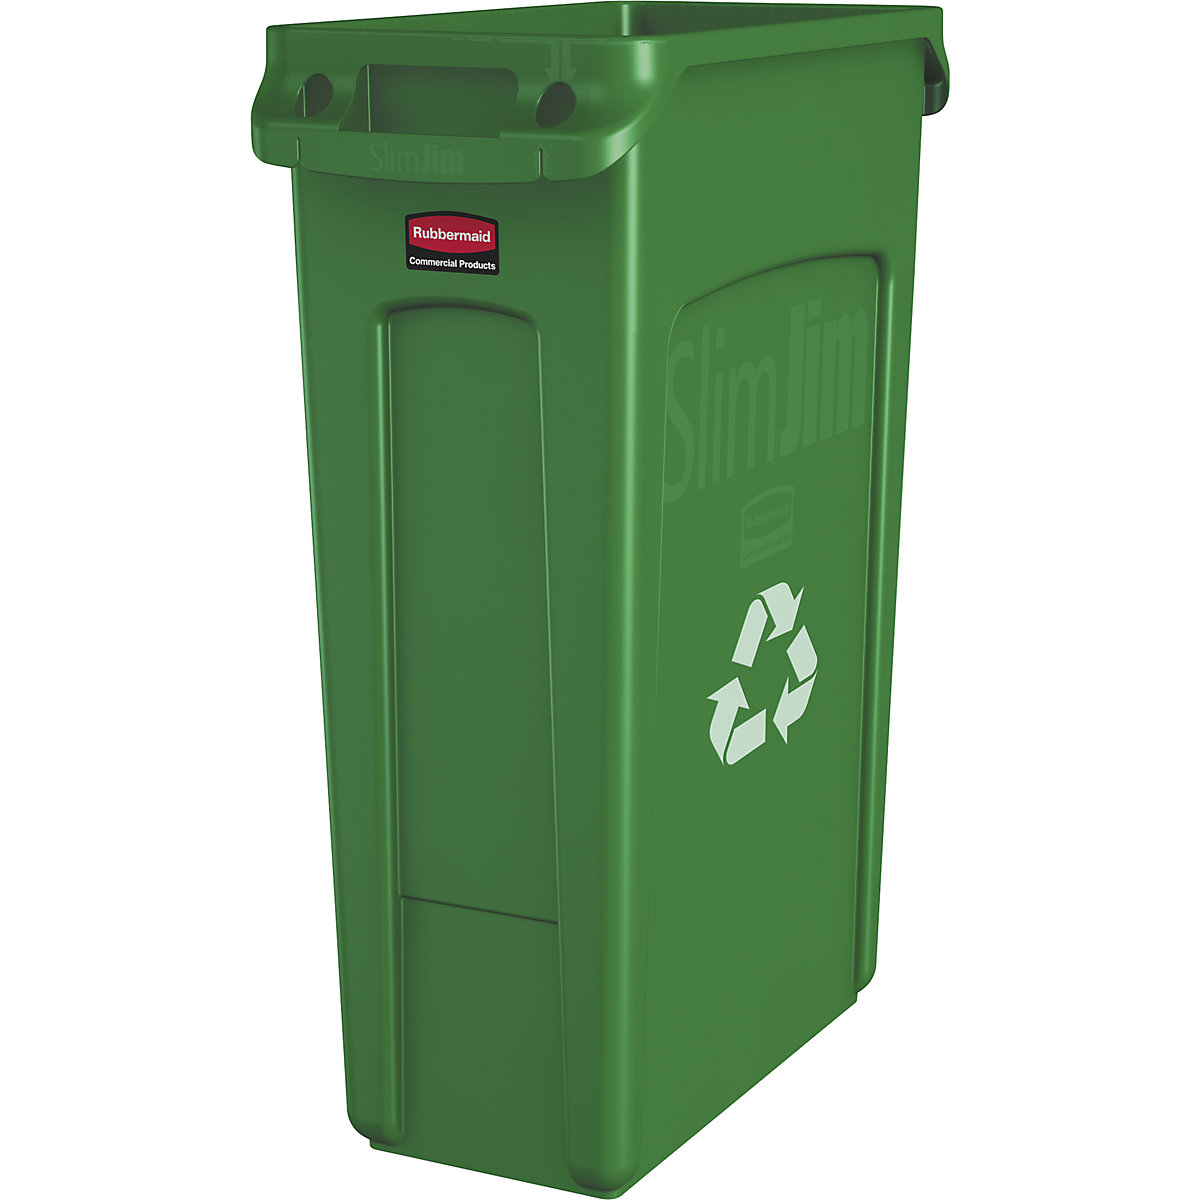 Rubbermaid Wertstoffsammler/Abfalleimer SLIM JIM®, Volumen 87 l, BxHxT 279 x 762 x 558 mm, grün mit Recyclingsymbol